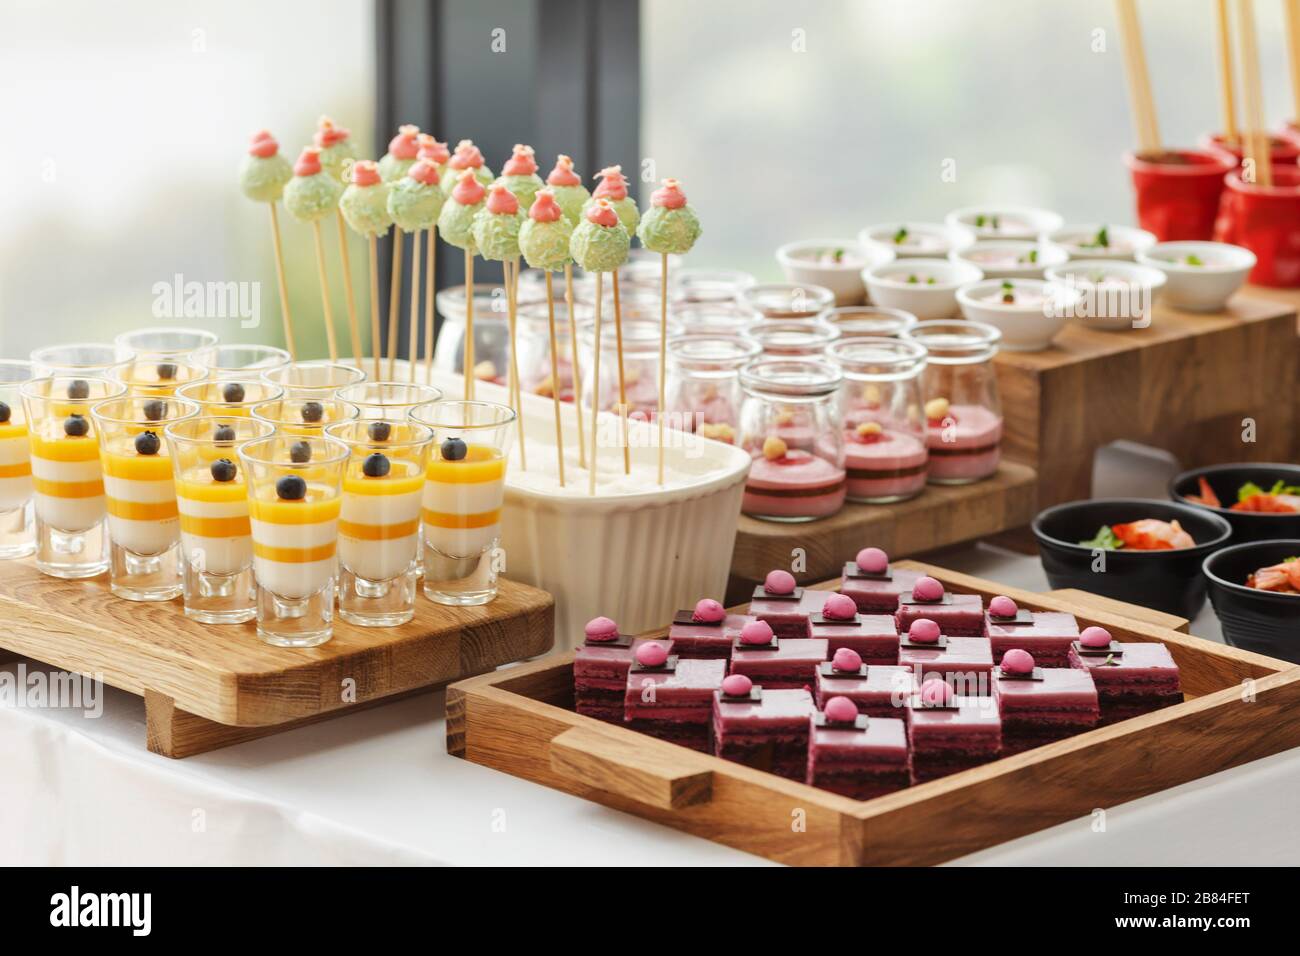 Élégant buffet de desserts coloré Banque D'Images